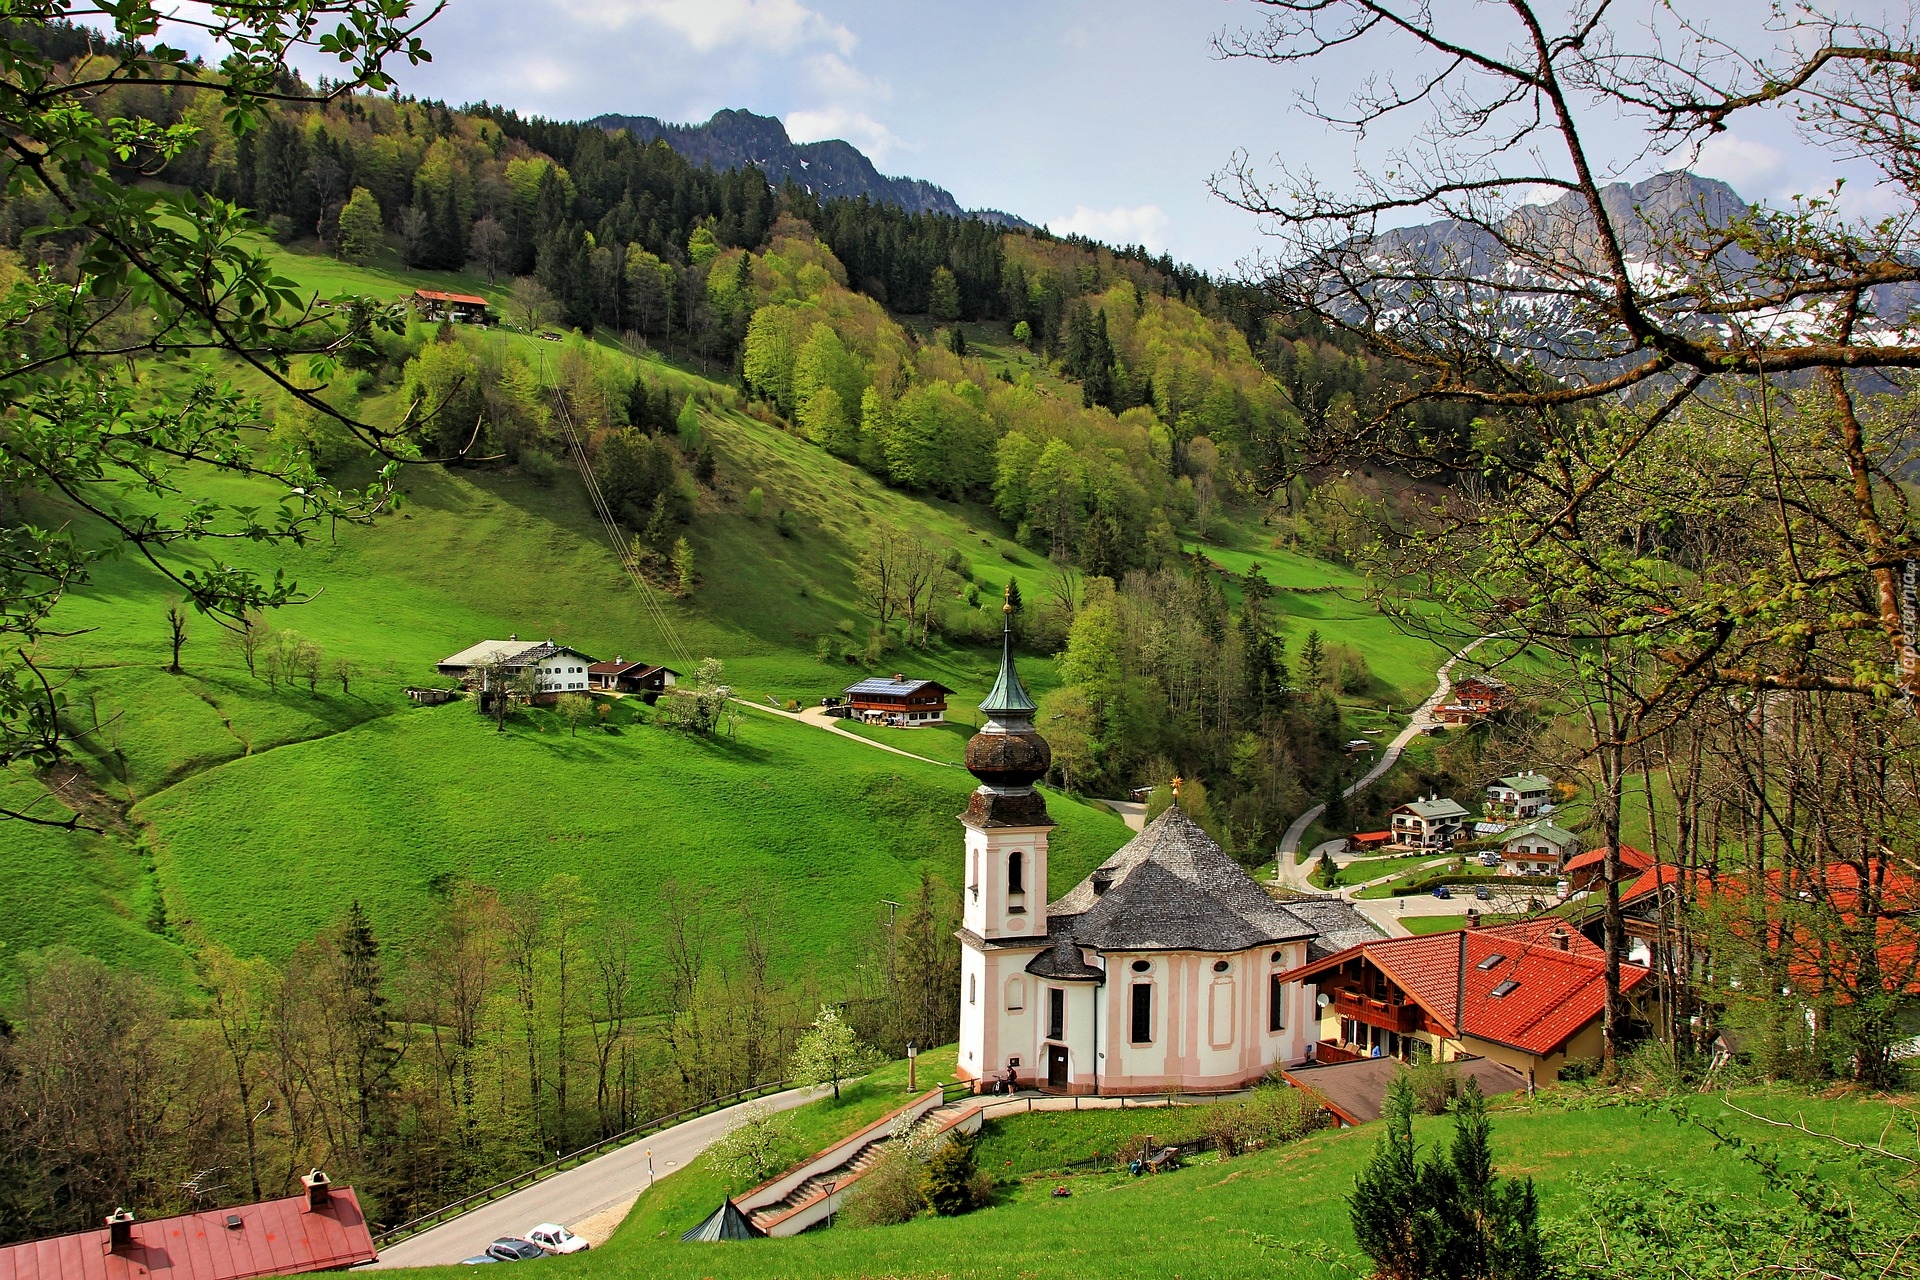 Kościół, Sanktuarium Maria Gern, Góry, Alpy Salzburskie, Lasy, Drzewa, Berchtesgaden, Bawaria, Niemcy